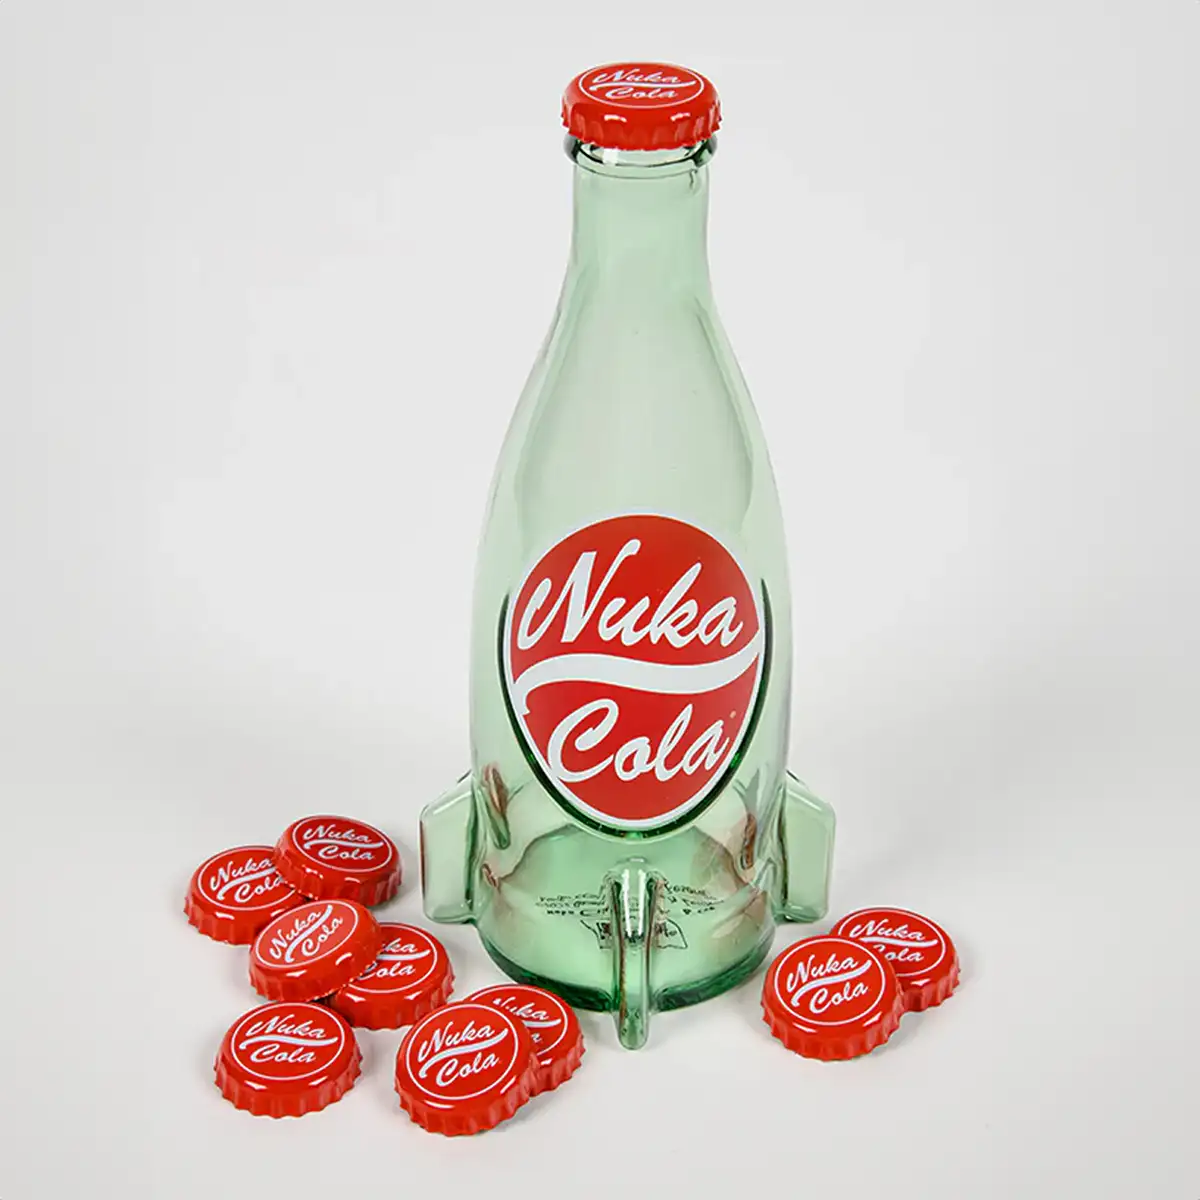 Fallout "Nuka Cola" Glasflasche und Kronkorken Image 2